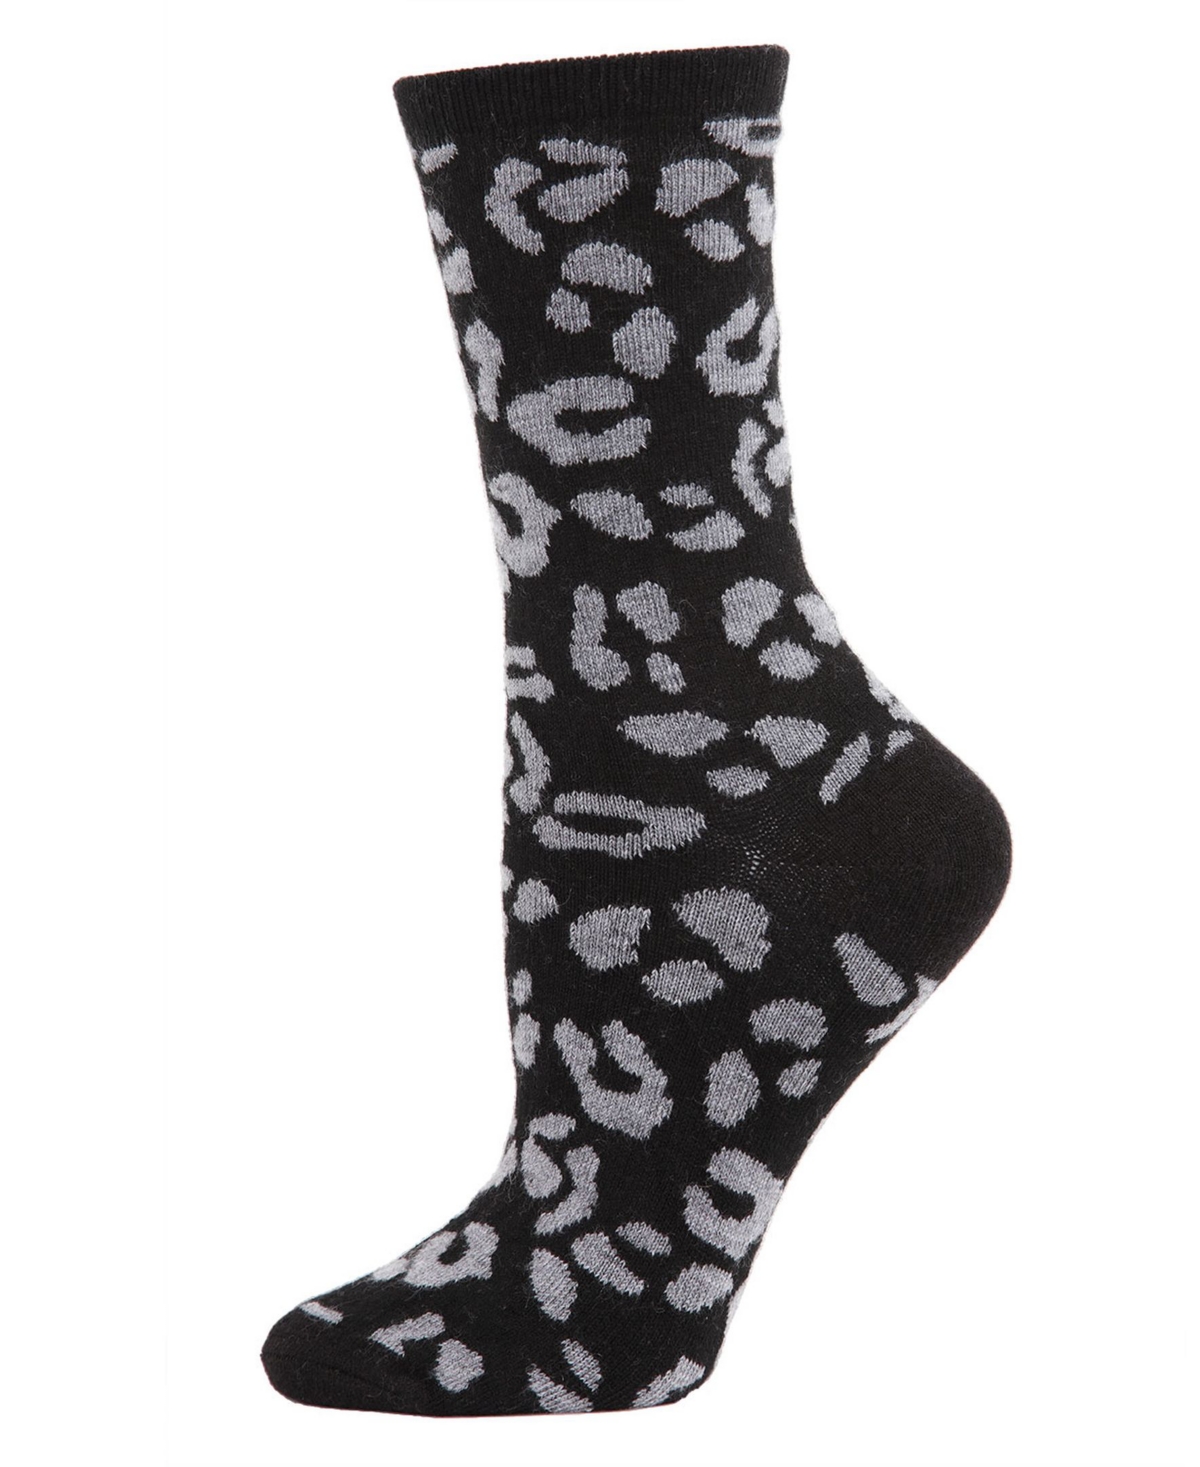 Leopard Animal Print Cashmere Women's Crew Socks - Med Gray H